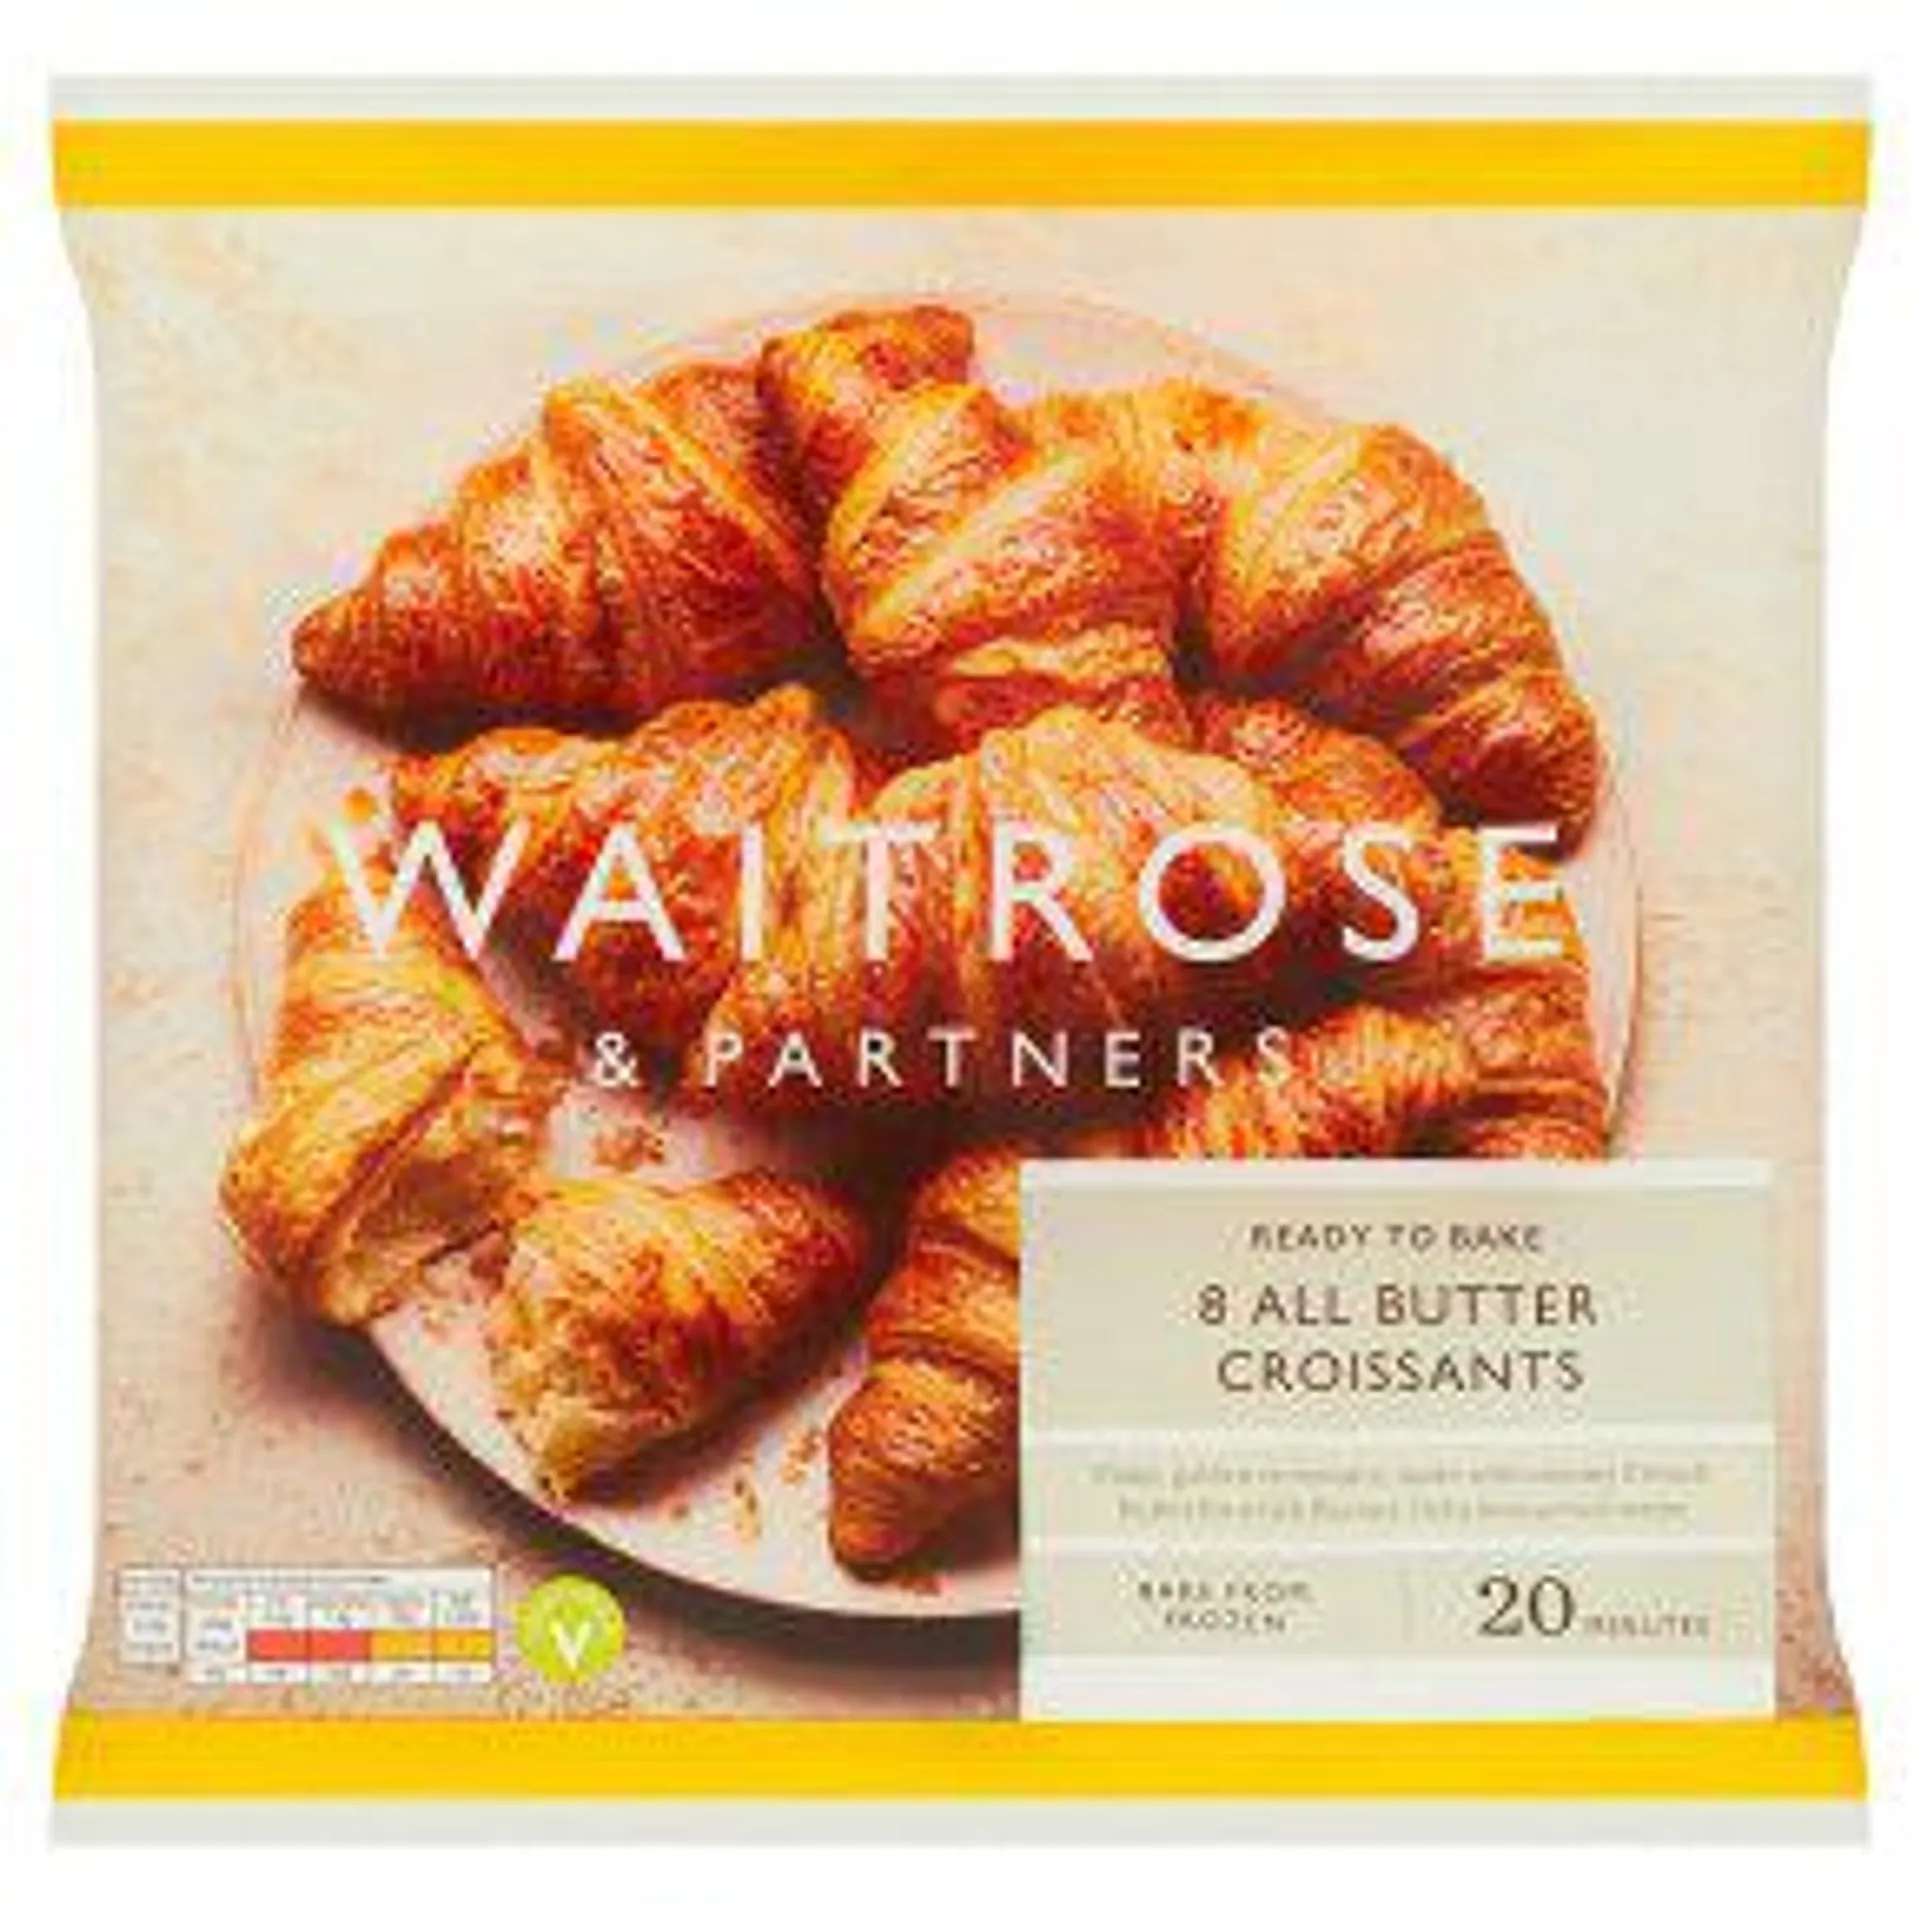 Waitrose 8 Butter Croissants